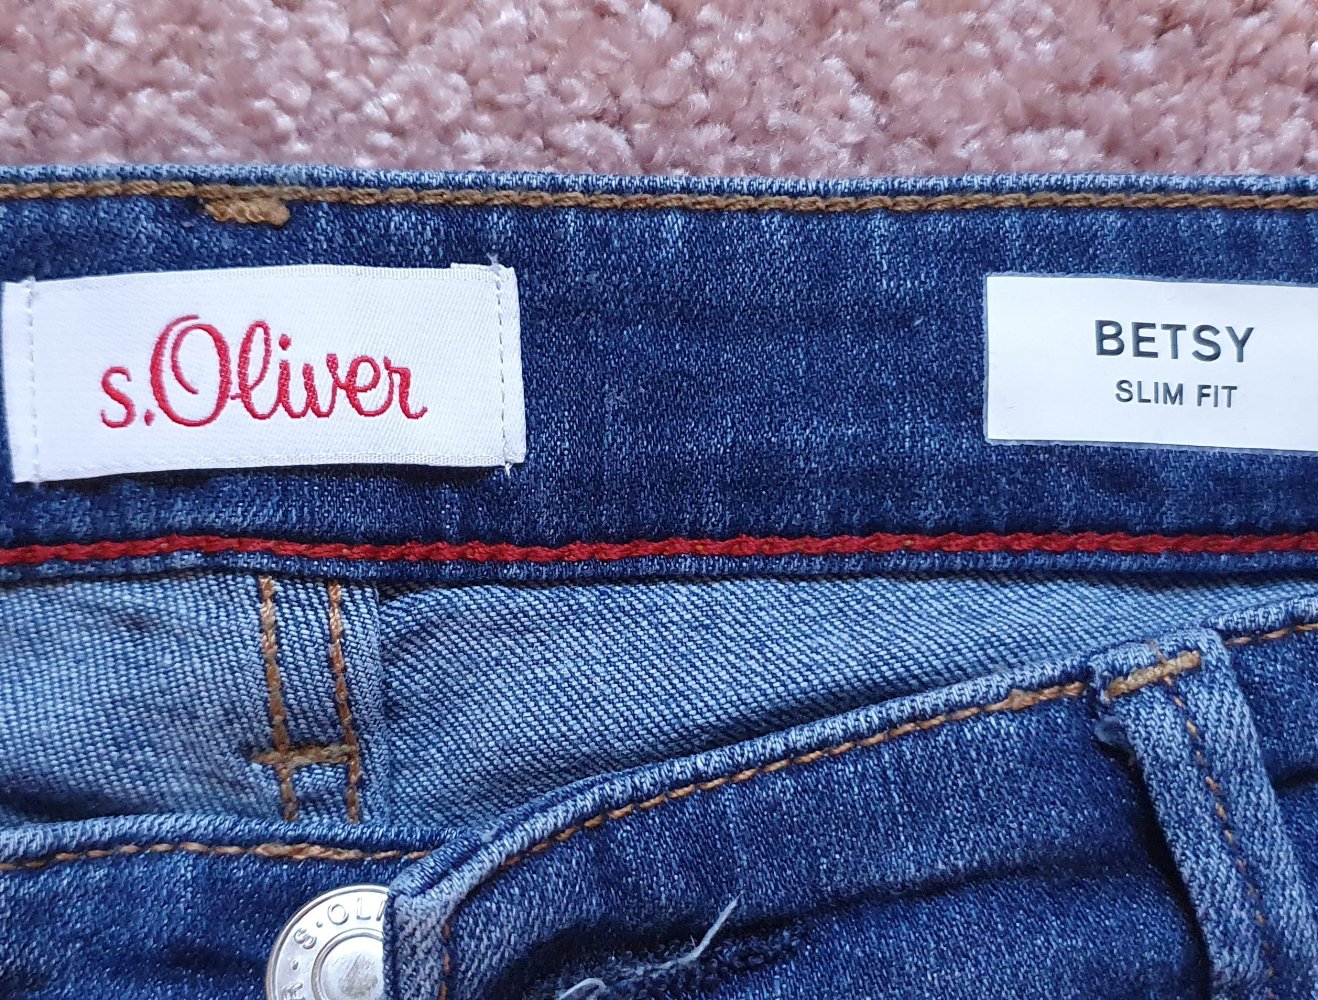 S.Oliver - S.oliver Jeans Betsy slim fit 40/32 :: Kleiderkorb.at